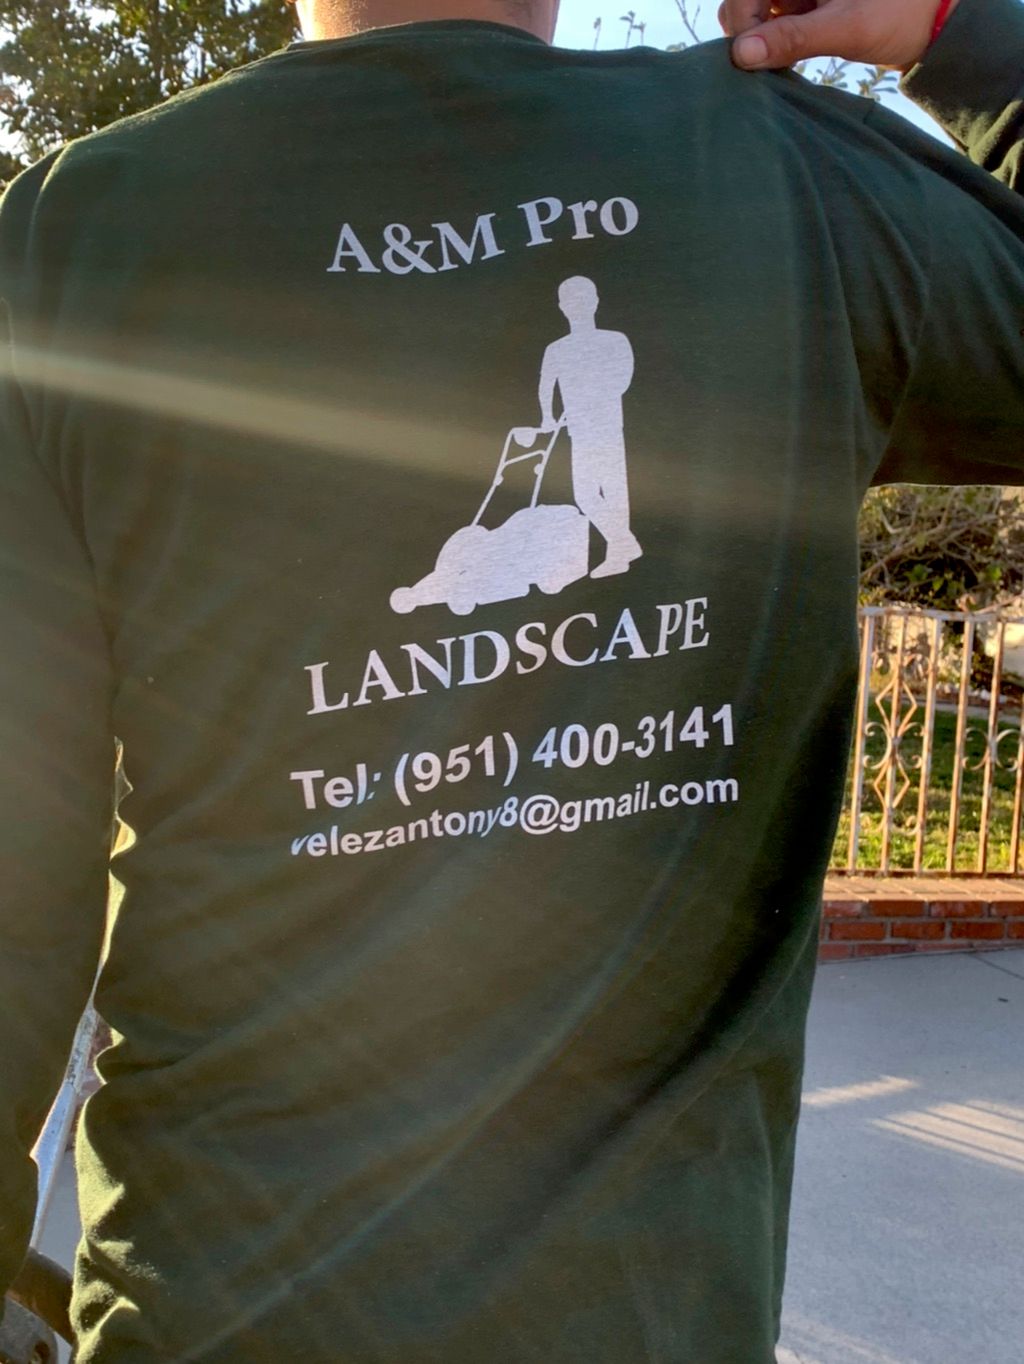 A&M pro landscape